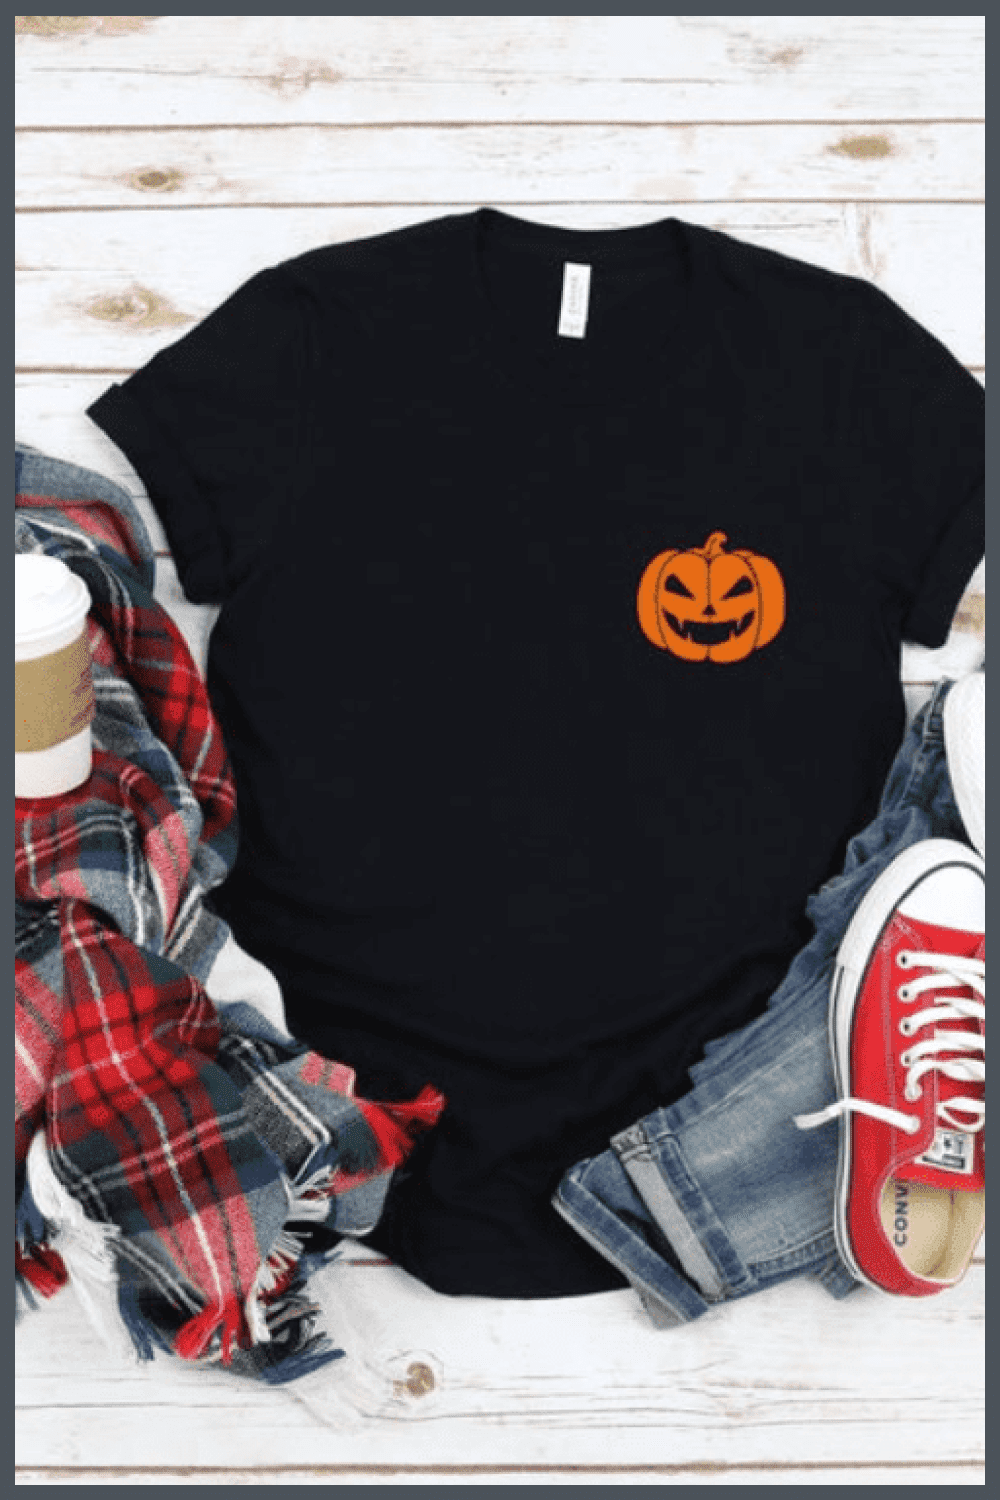 Black minimalistic T-shirt with a small pumpkin.